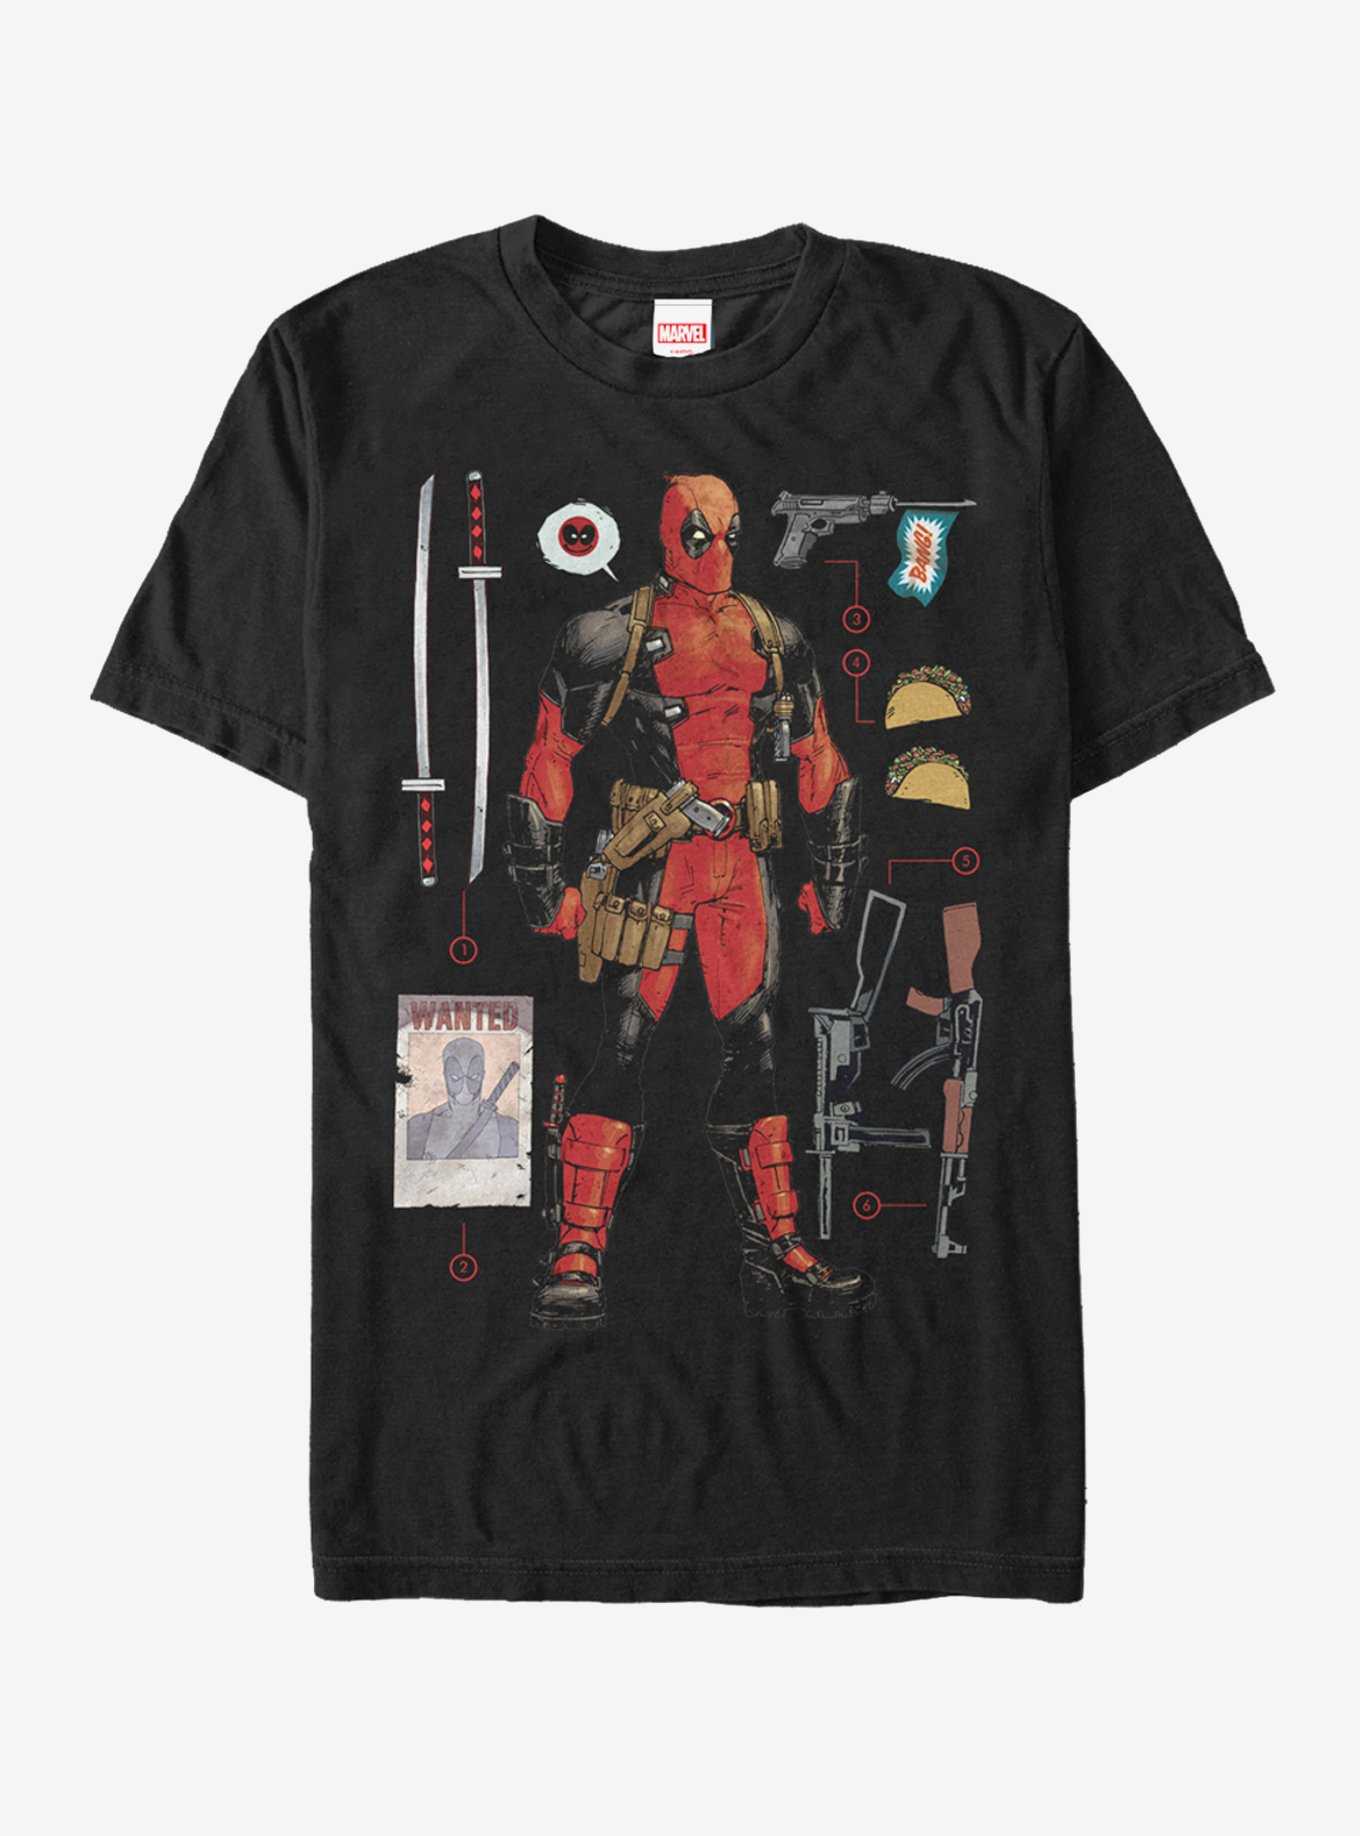 Tee-shirt Deadpool, Articles de fête> Déguisements et accessoires> Déguisements vente